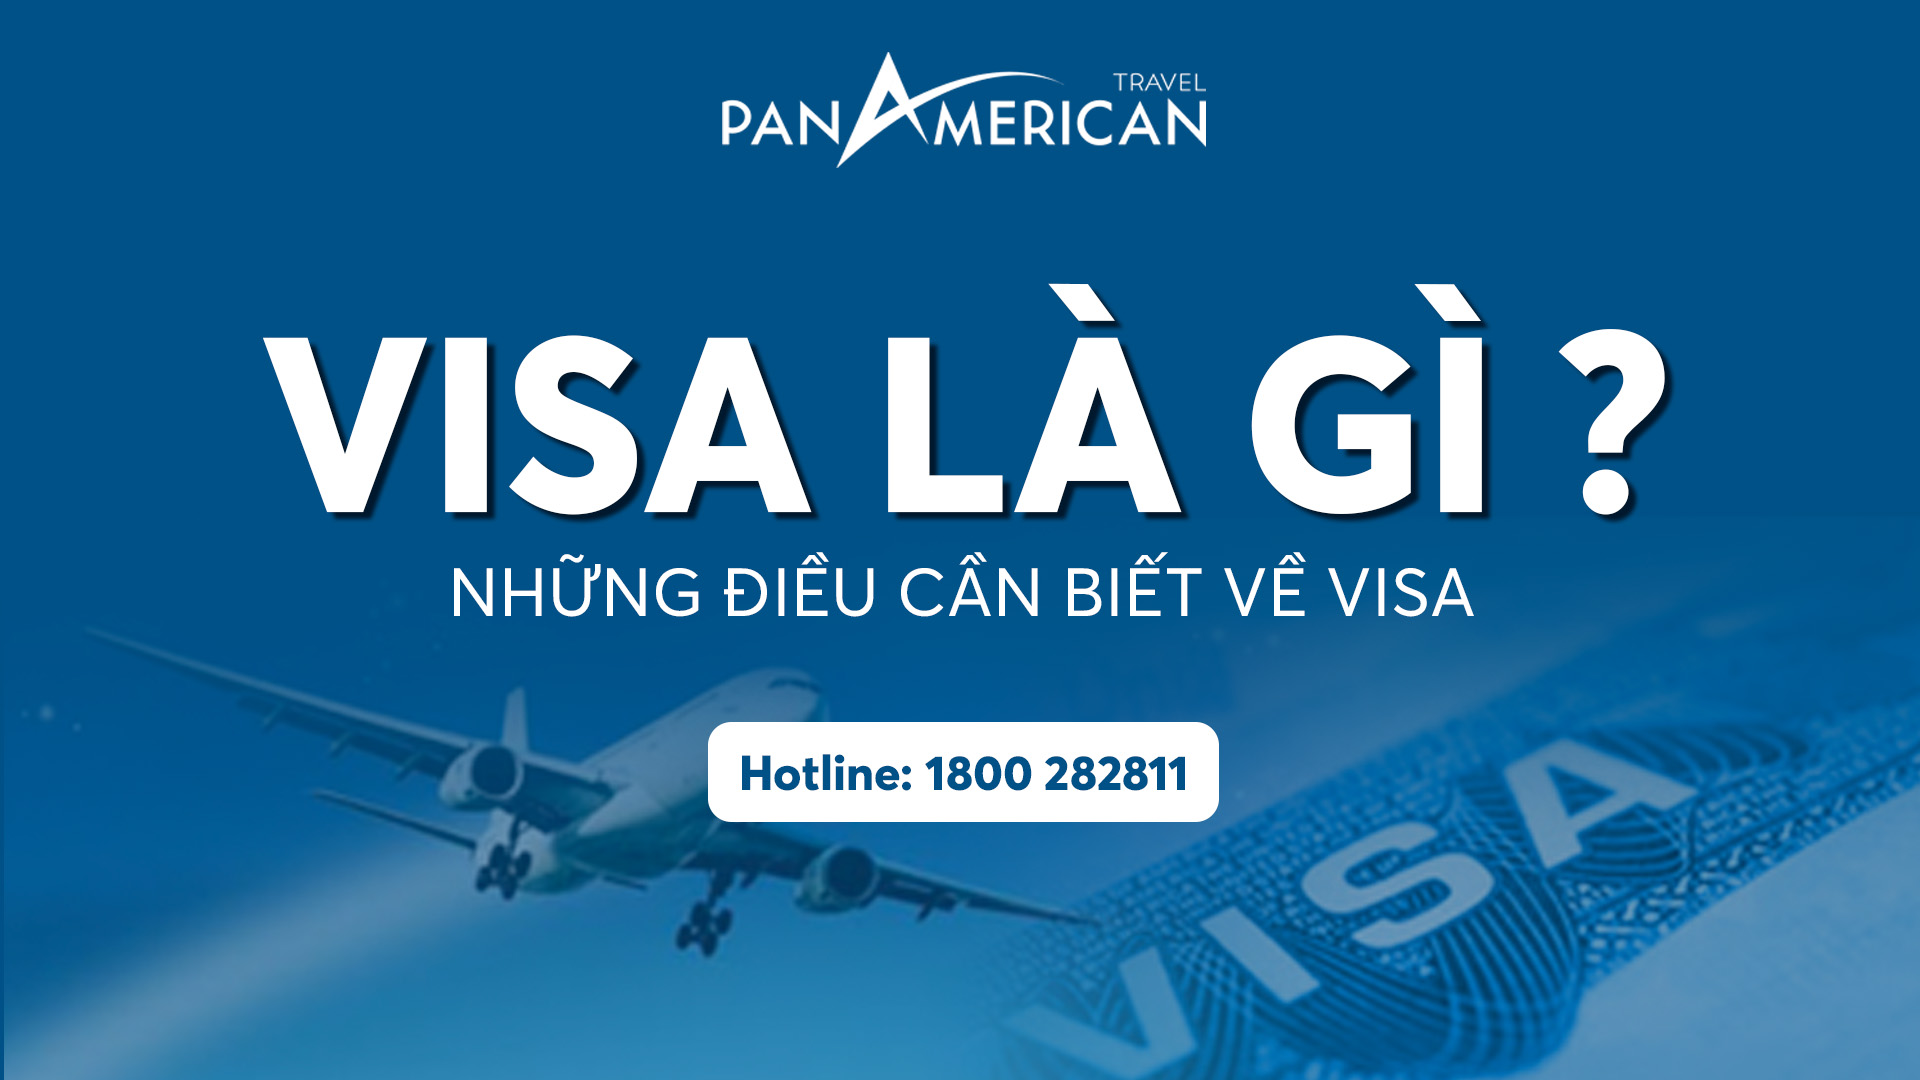 Visa là gì? Các loại visa, những quốc gia nào miễn visa cho công dân Việt Nam?